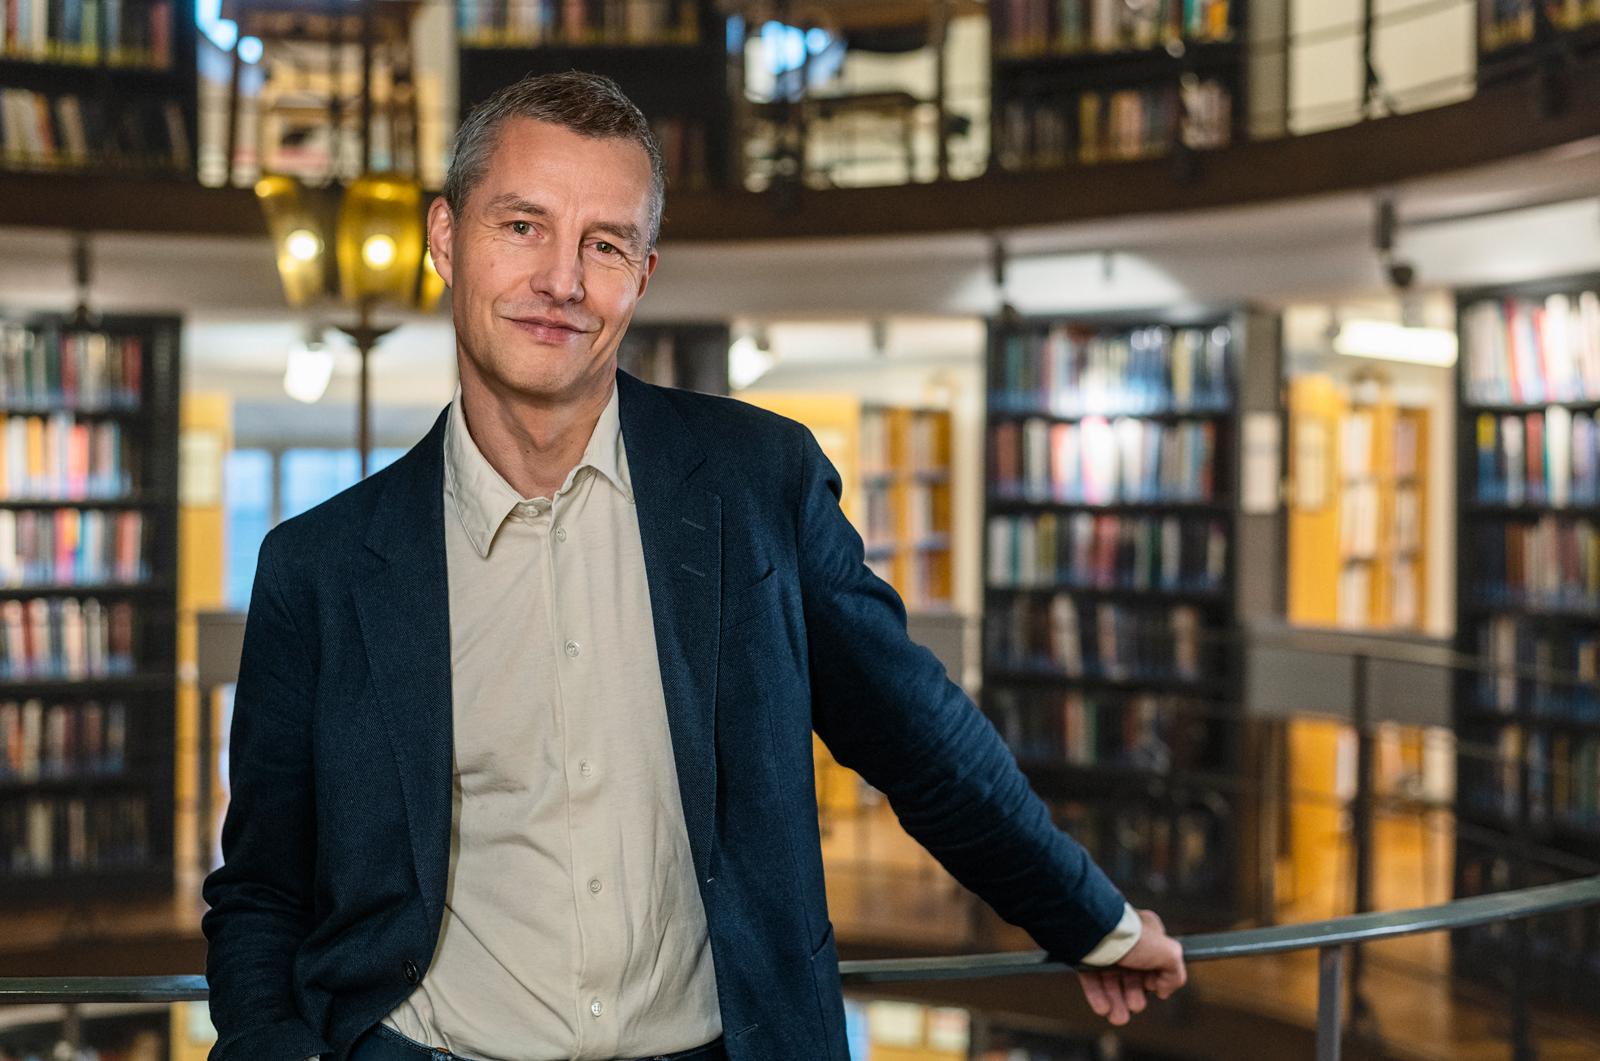 Jesper Roine är professor i nationalekonomi vid Handelshögskolan i Stockholm och verksam vid forskningsinstitutet SITE. Han är nu aktuell med ”Därför är ojämlikheten viktig”.